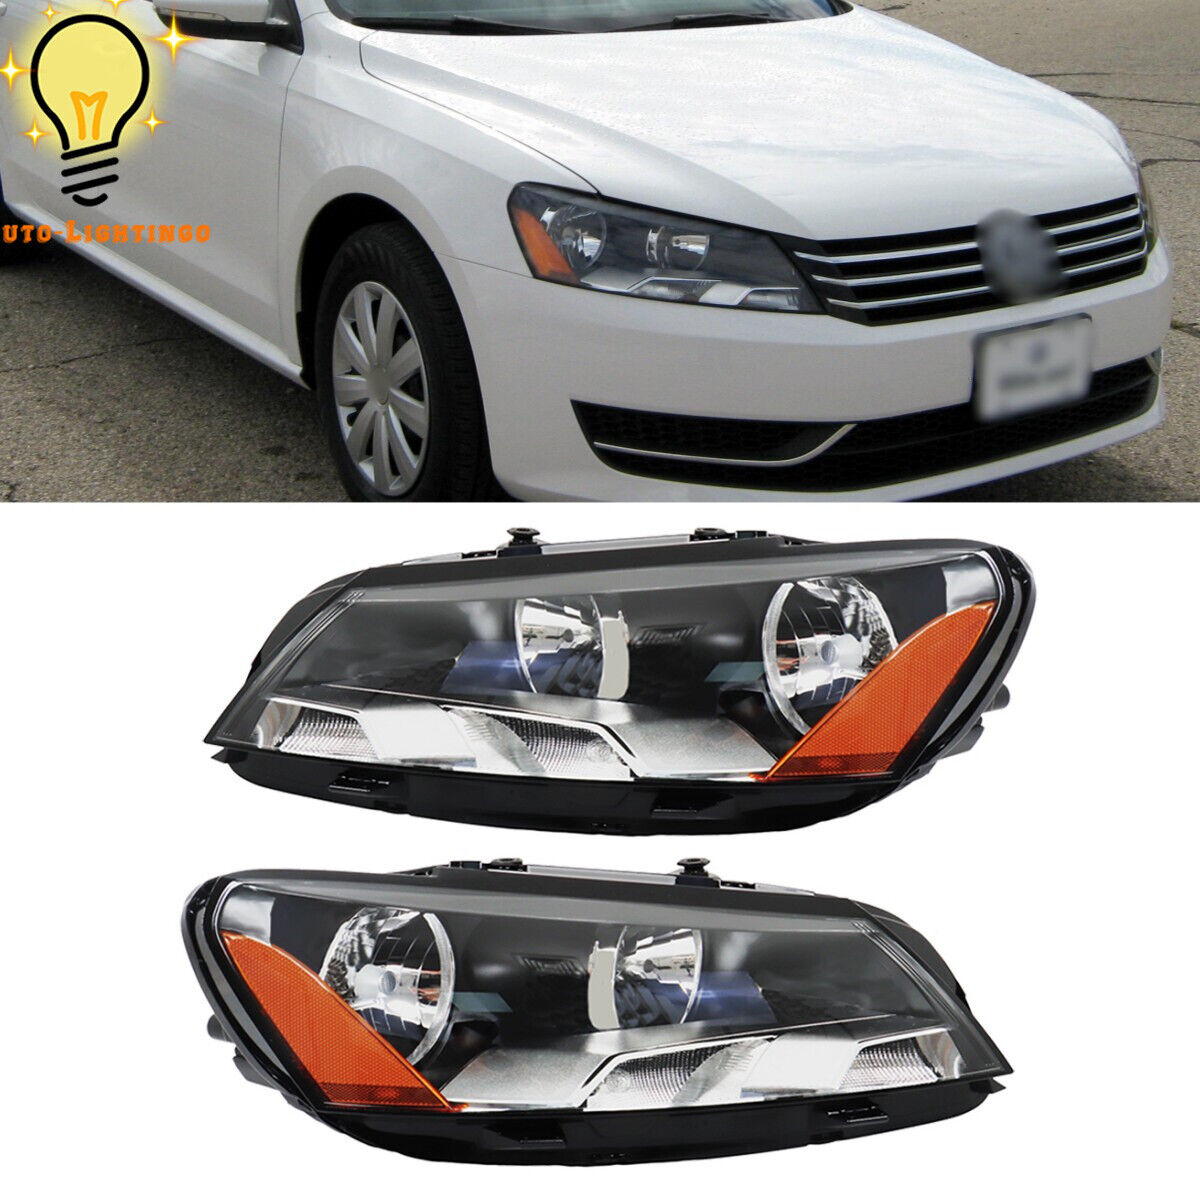 Headlight Headlamp Assembly For 2012-2015 Volkswagen Passat Left&Right Side